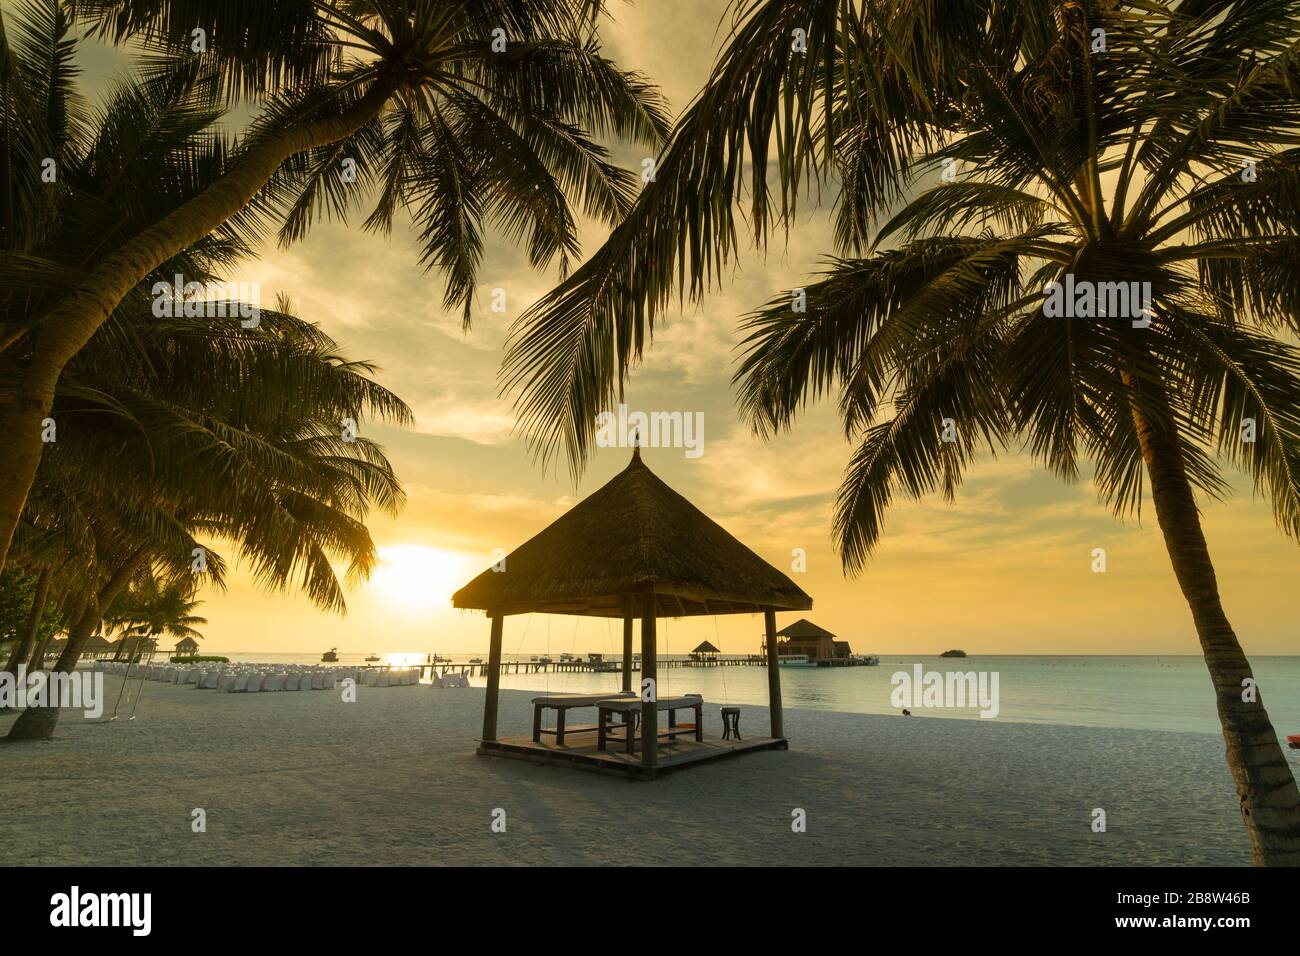 Plage de sable au coucher du soleil de l'île tropicale aux Maldives Banque D'Images